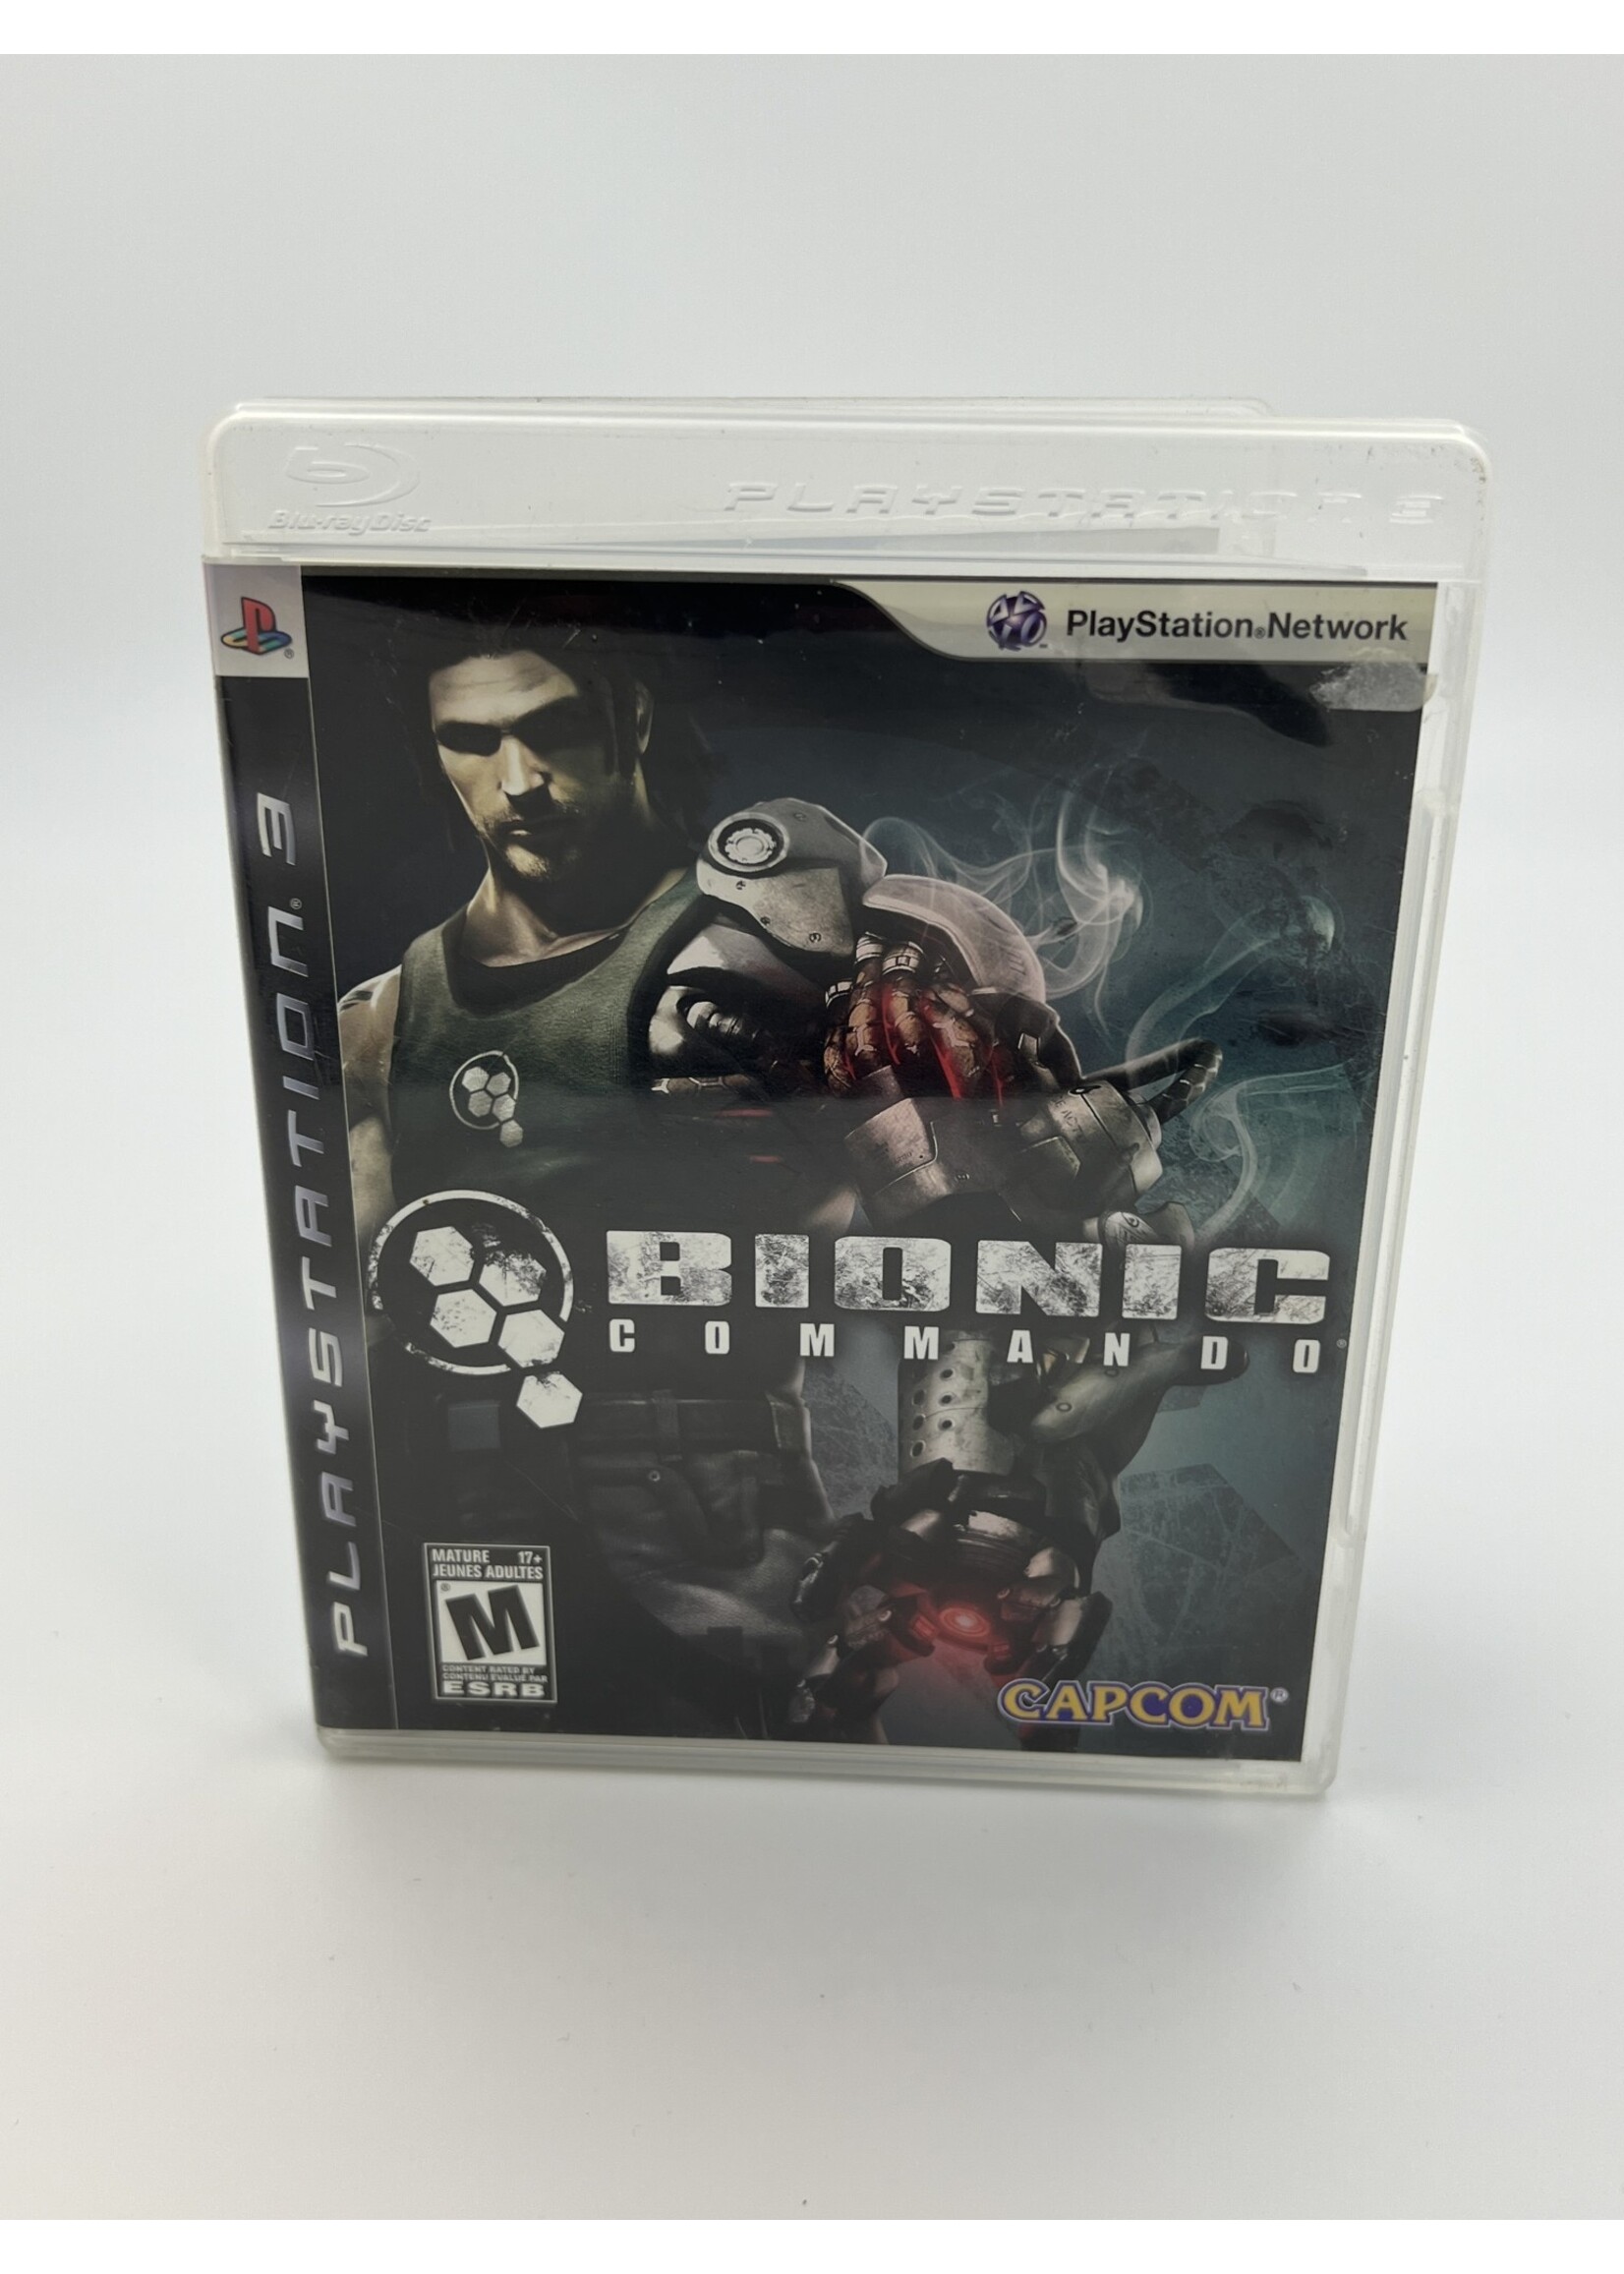 Sony Bionic Commando PS3